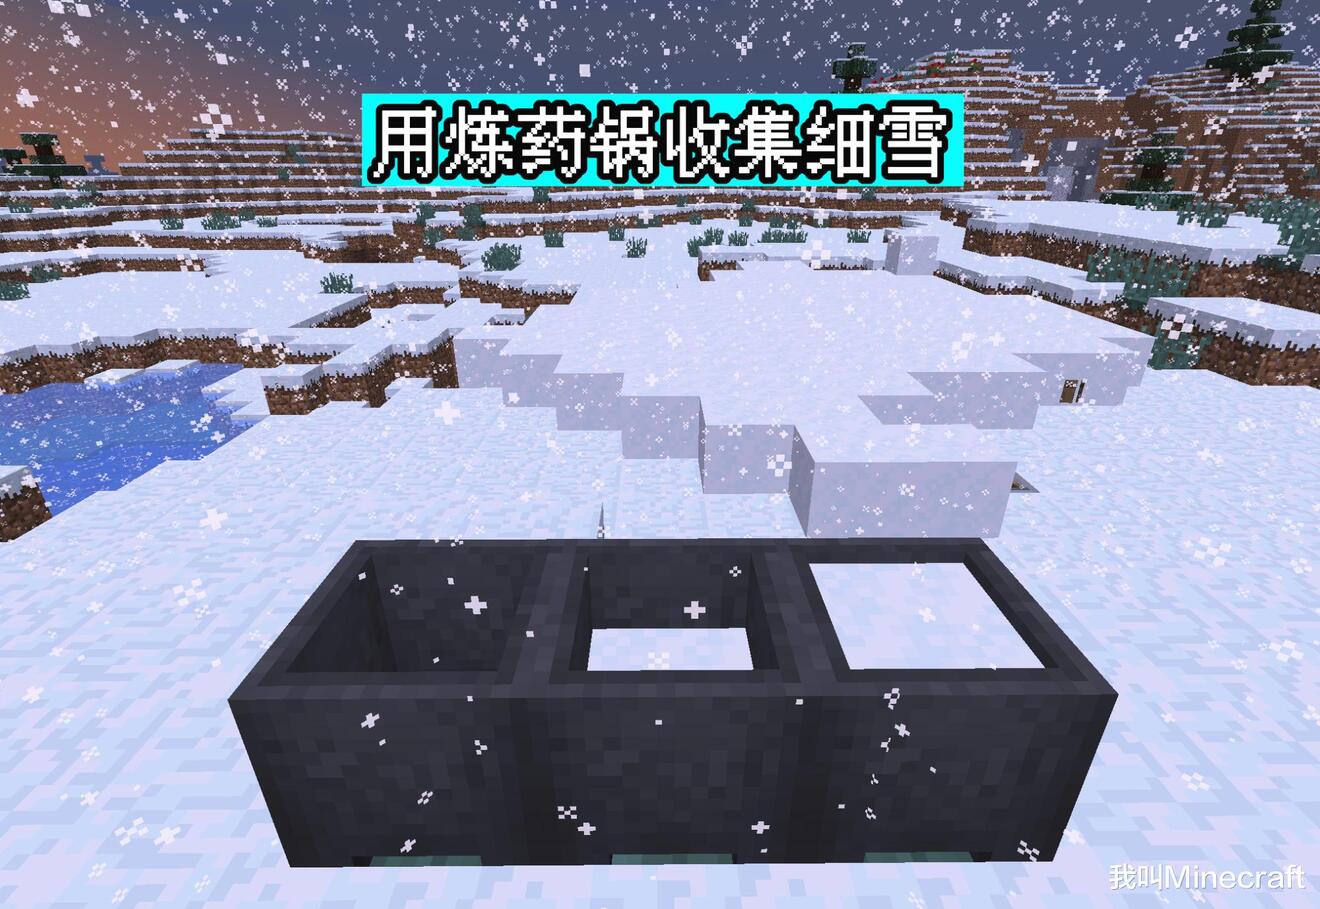 我的世界1.17细雪方块详解 方块机制与温度系统一览